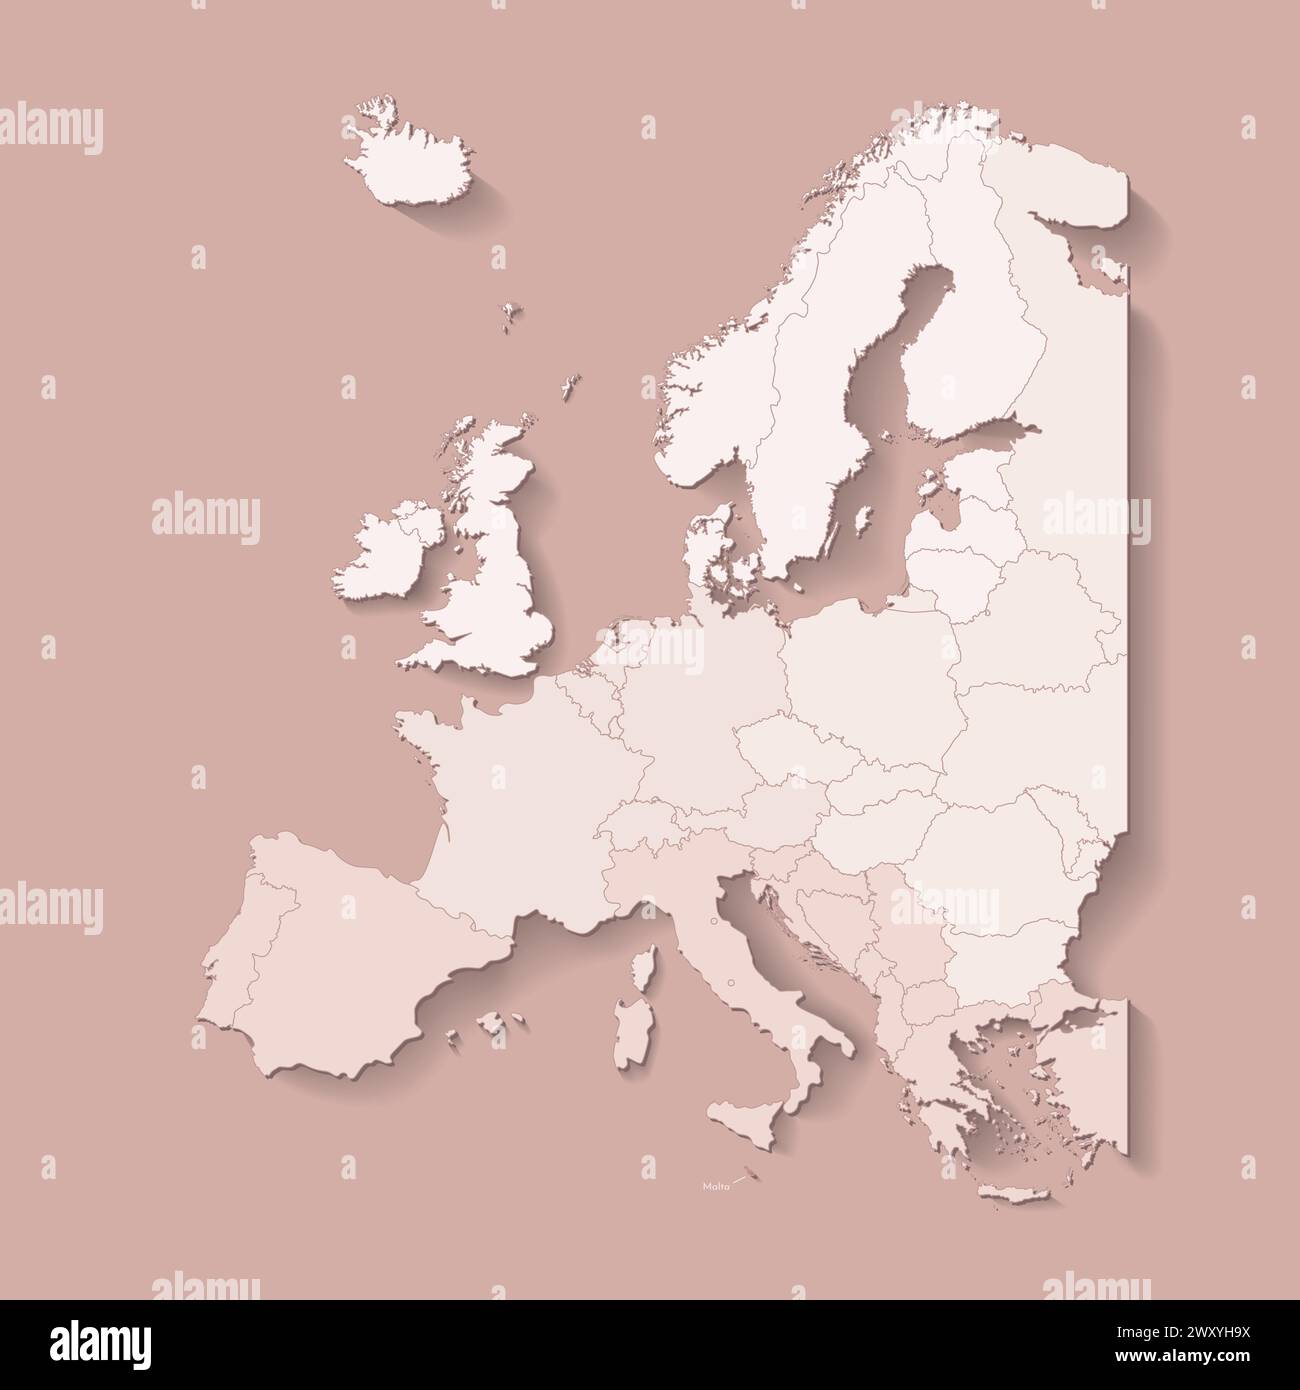 Illustrazione vettoriale con terra europea con confini di stati e paese contrassegnato Malta. Mappa politica in colori marroni con l'occidentale, il sud e ecc. regi Illustrazione Vettoriale